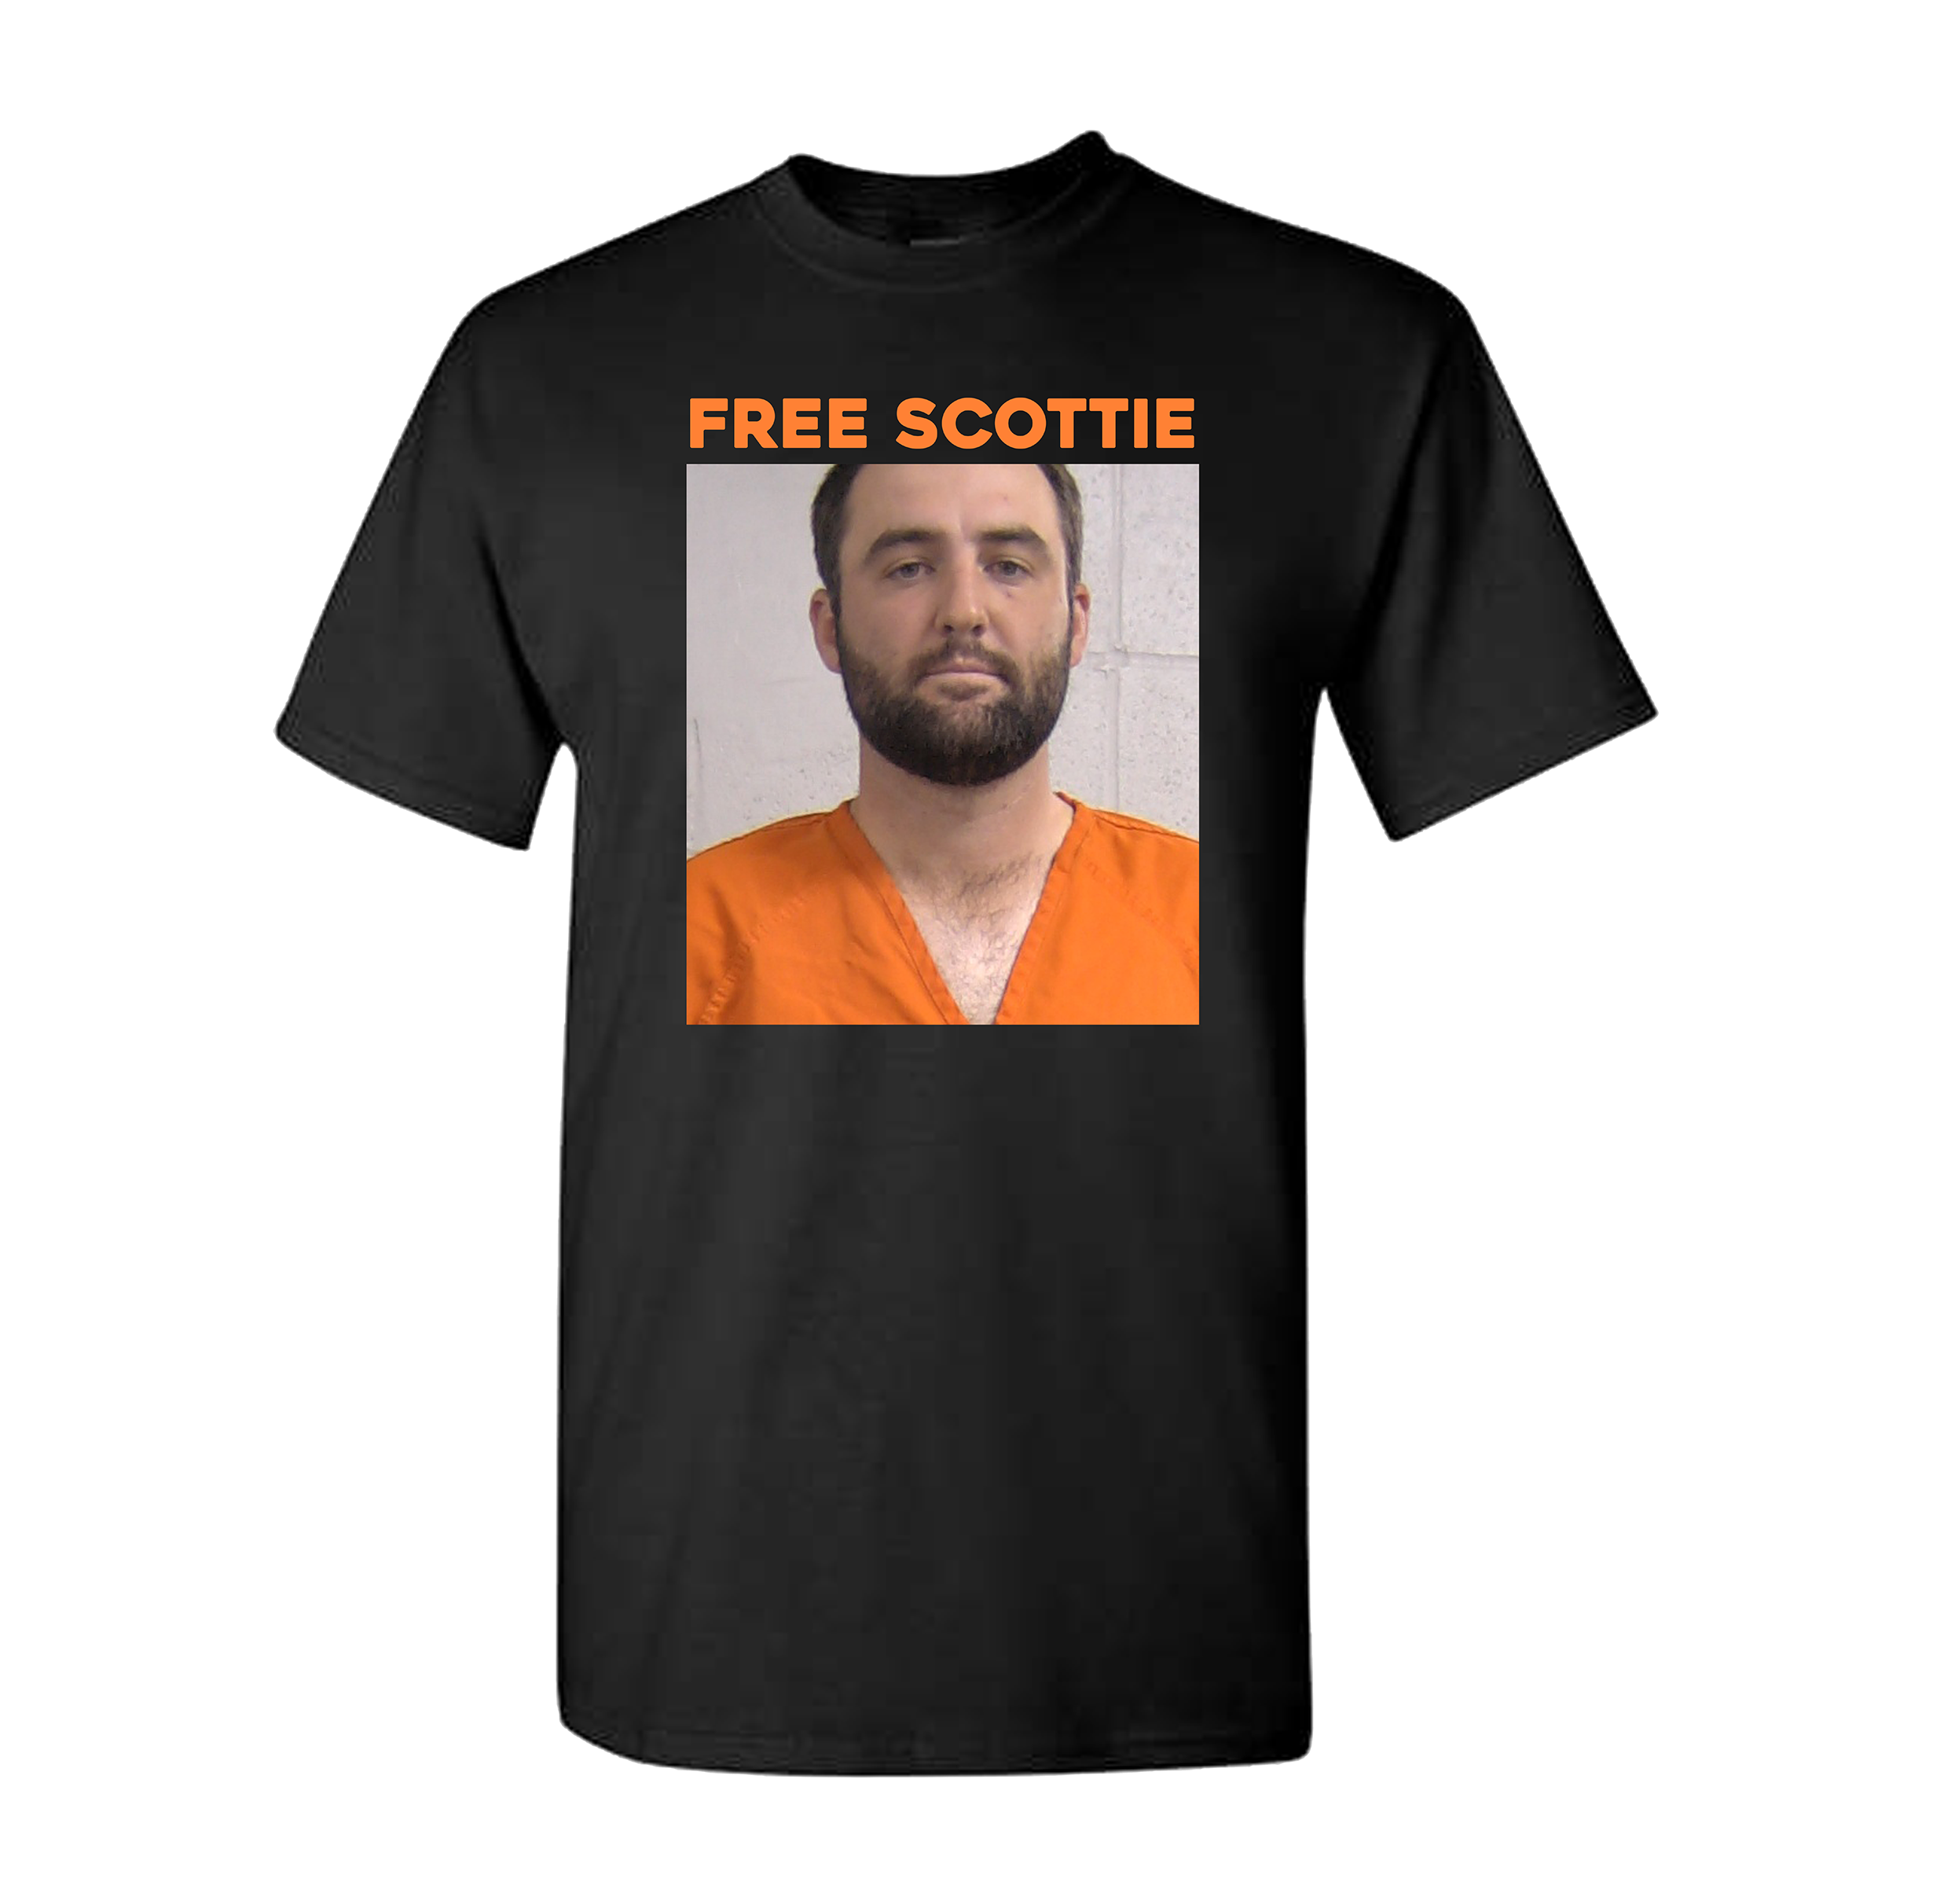 Free Scottie Tee